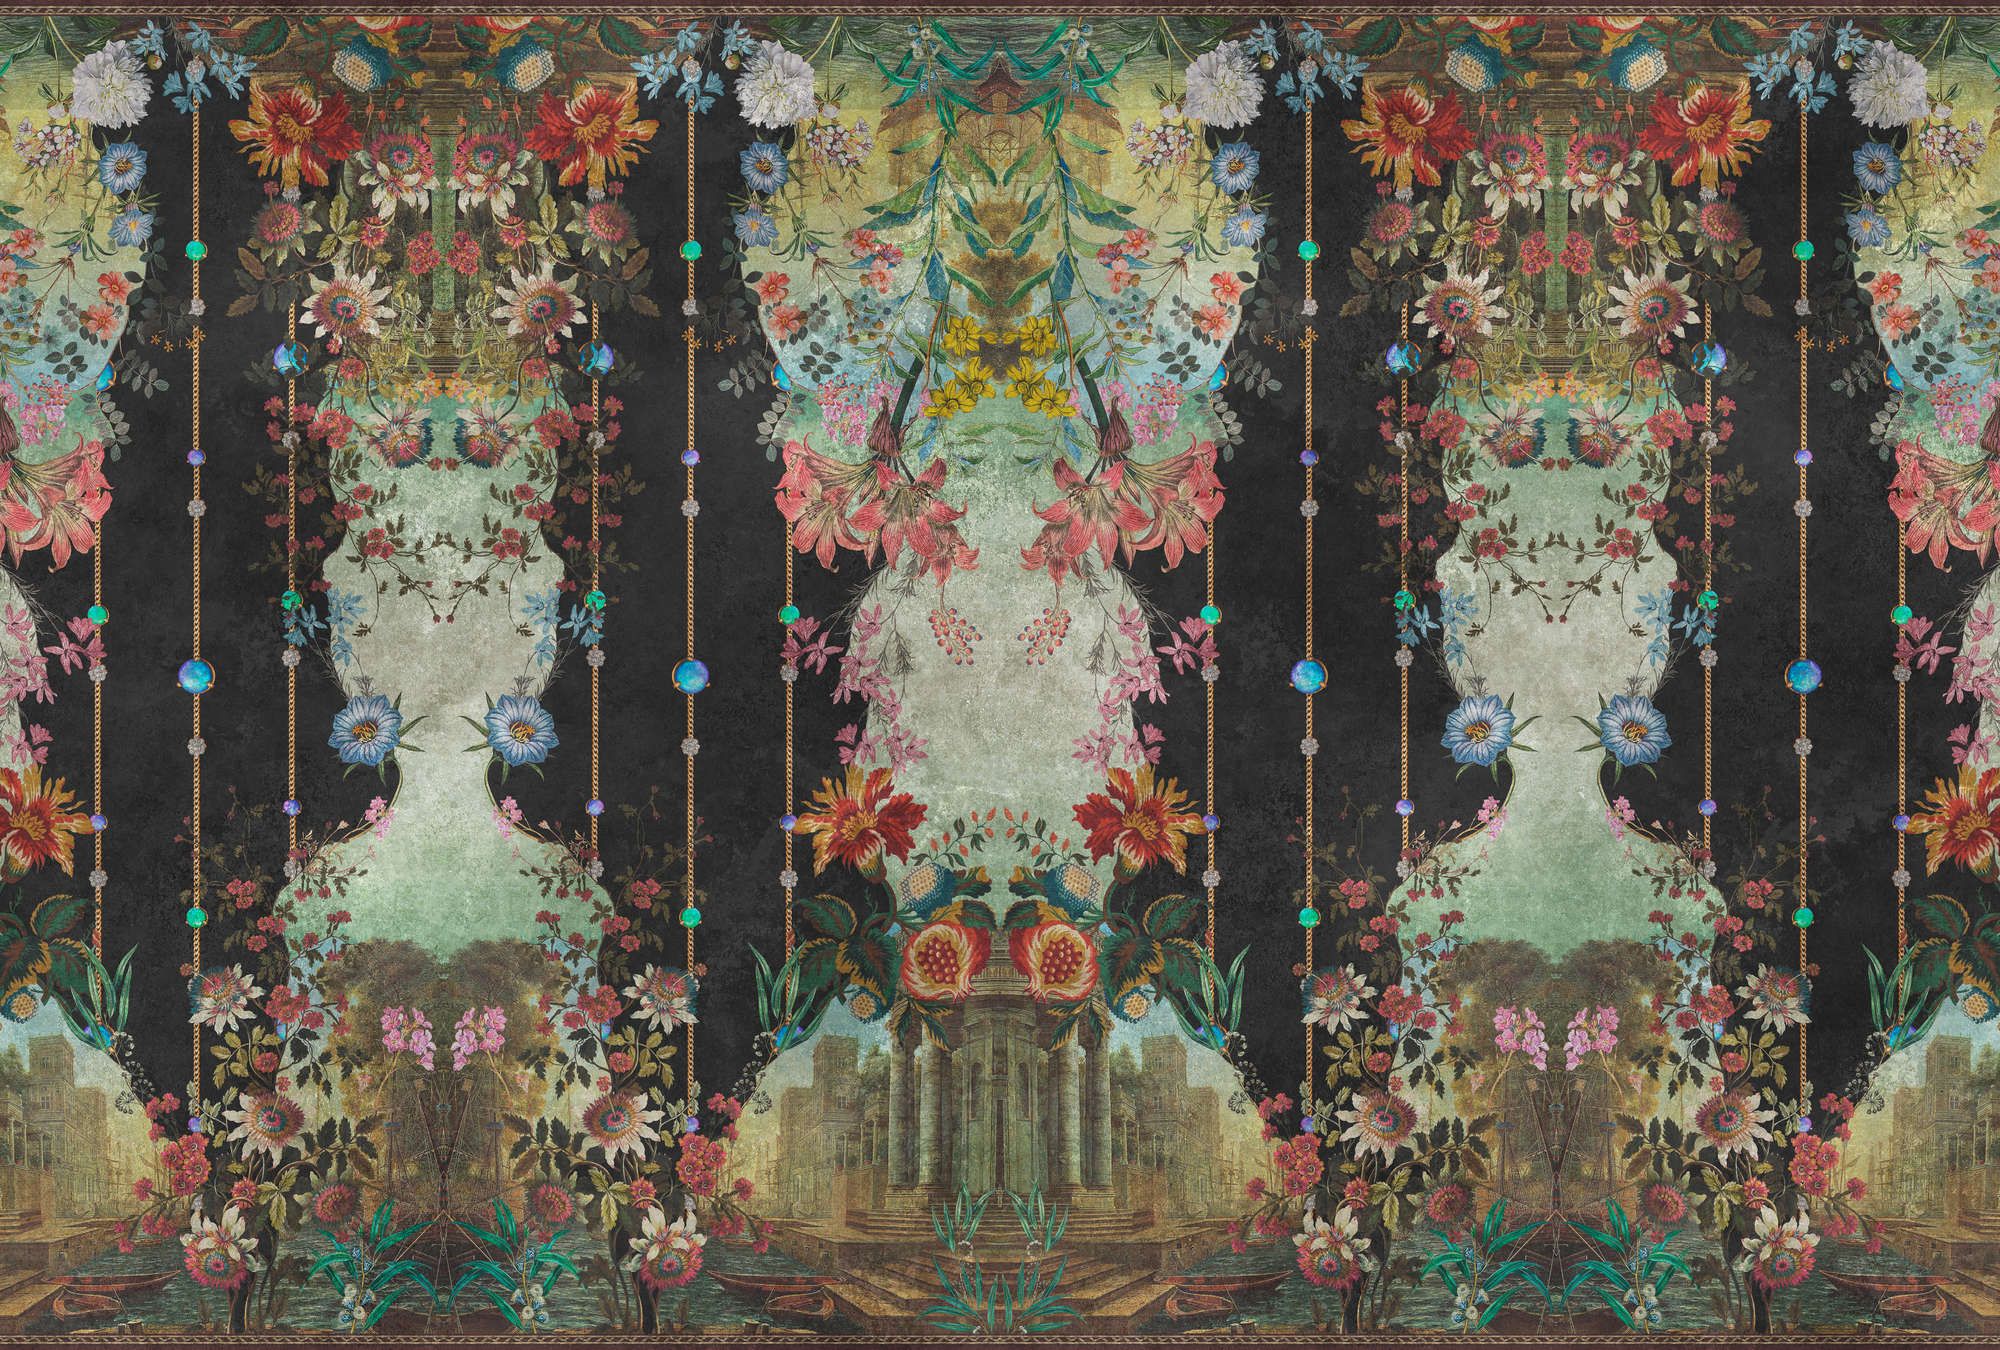             Fotobehang »ophelia« - Sierlambrisering met bloemmotief op vintage gipsstructuur - Glad, licht parelend vliesmateriaal
        